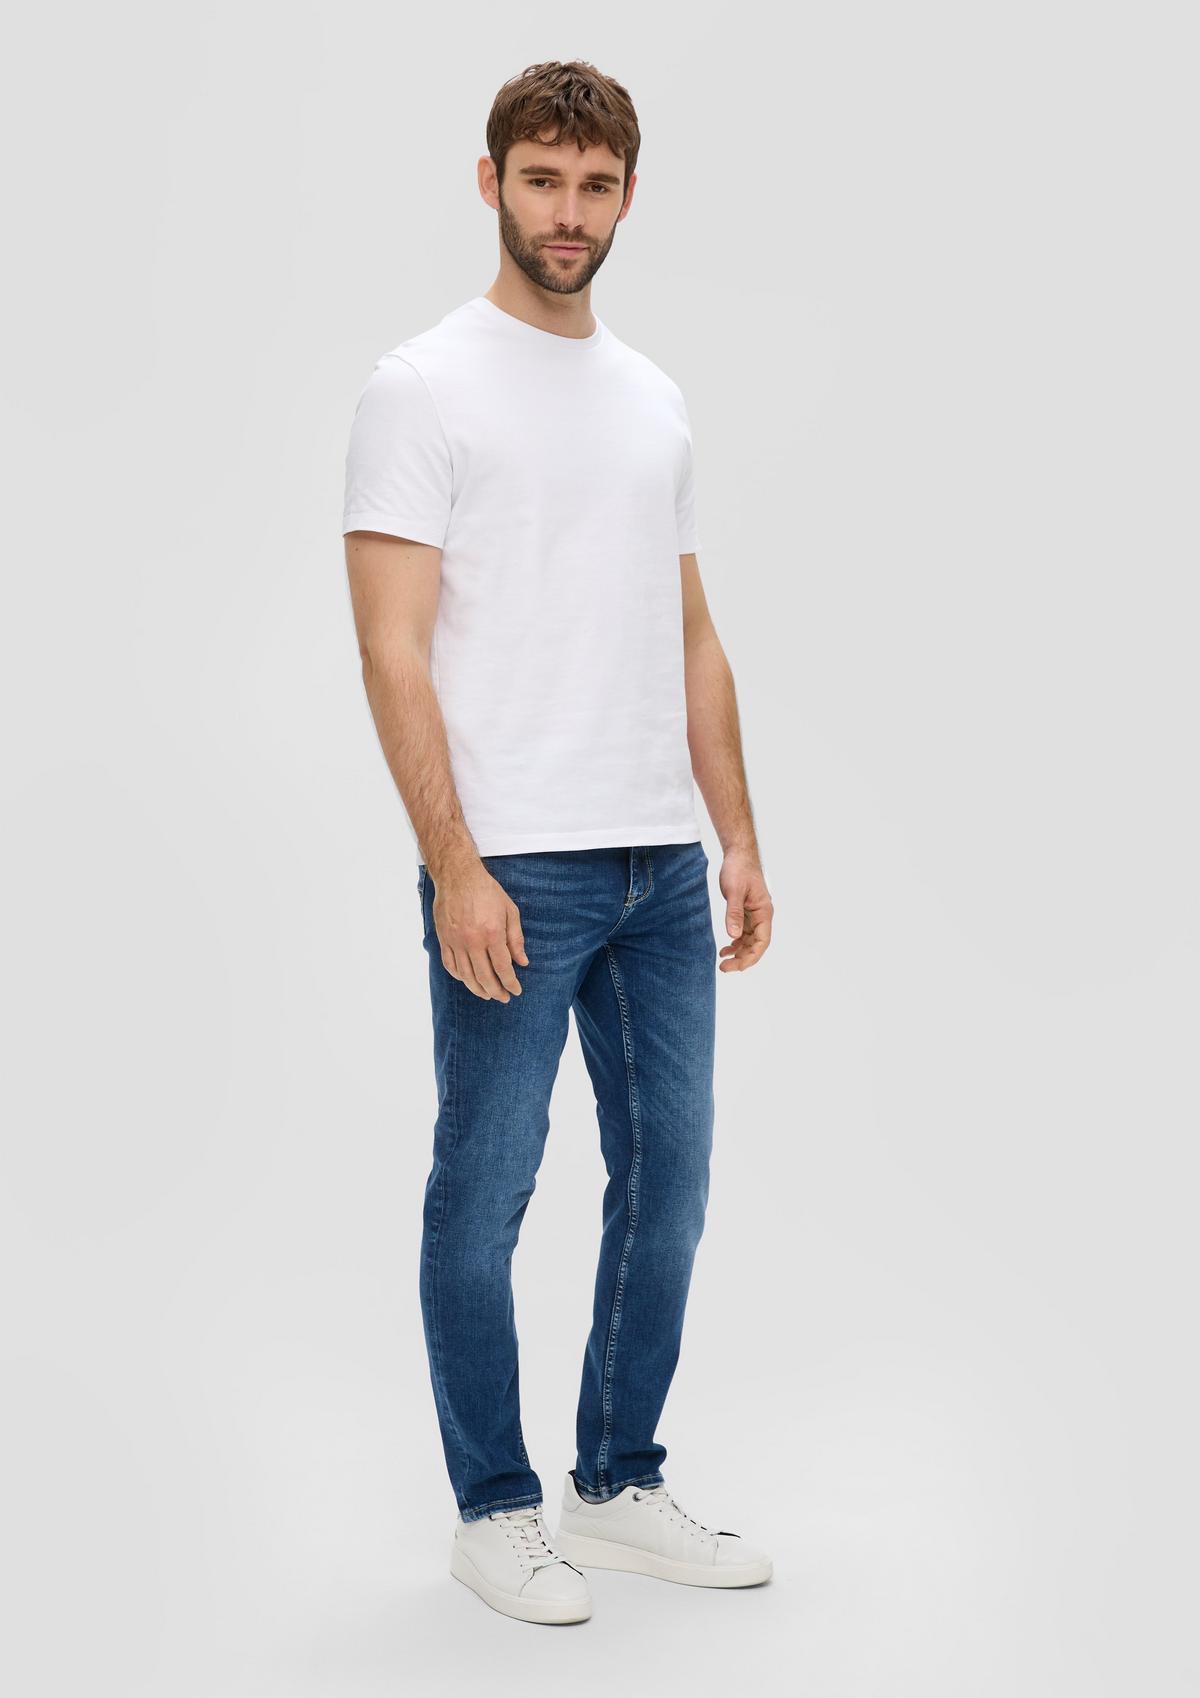 Jeans Nelio / Slim Fit / Mid Rise / Slim Leg